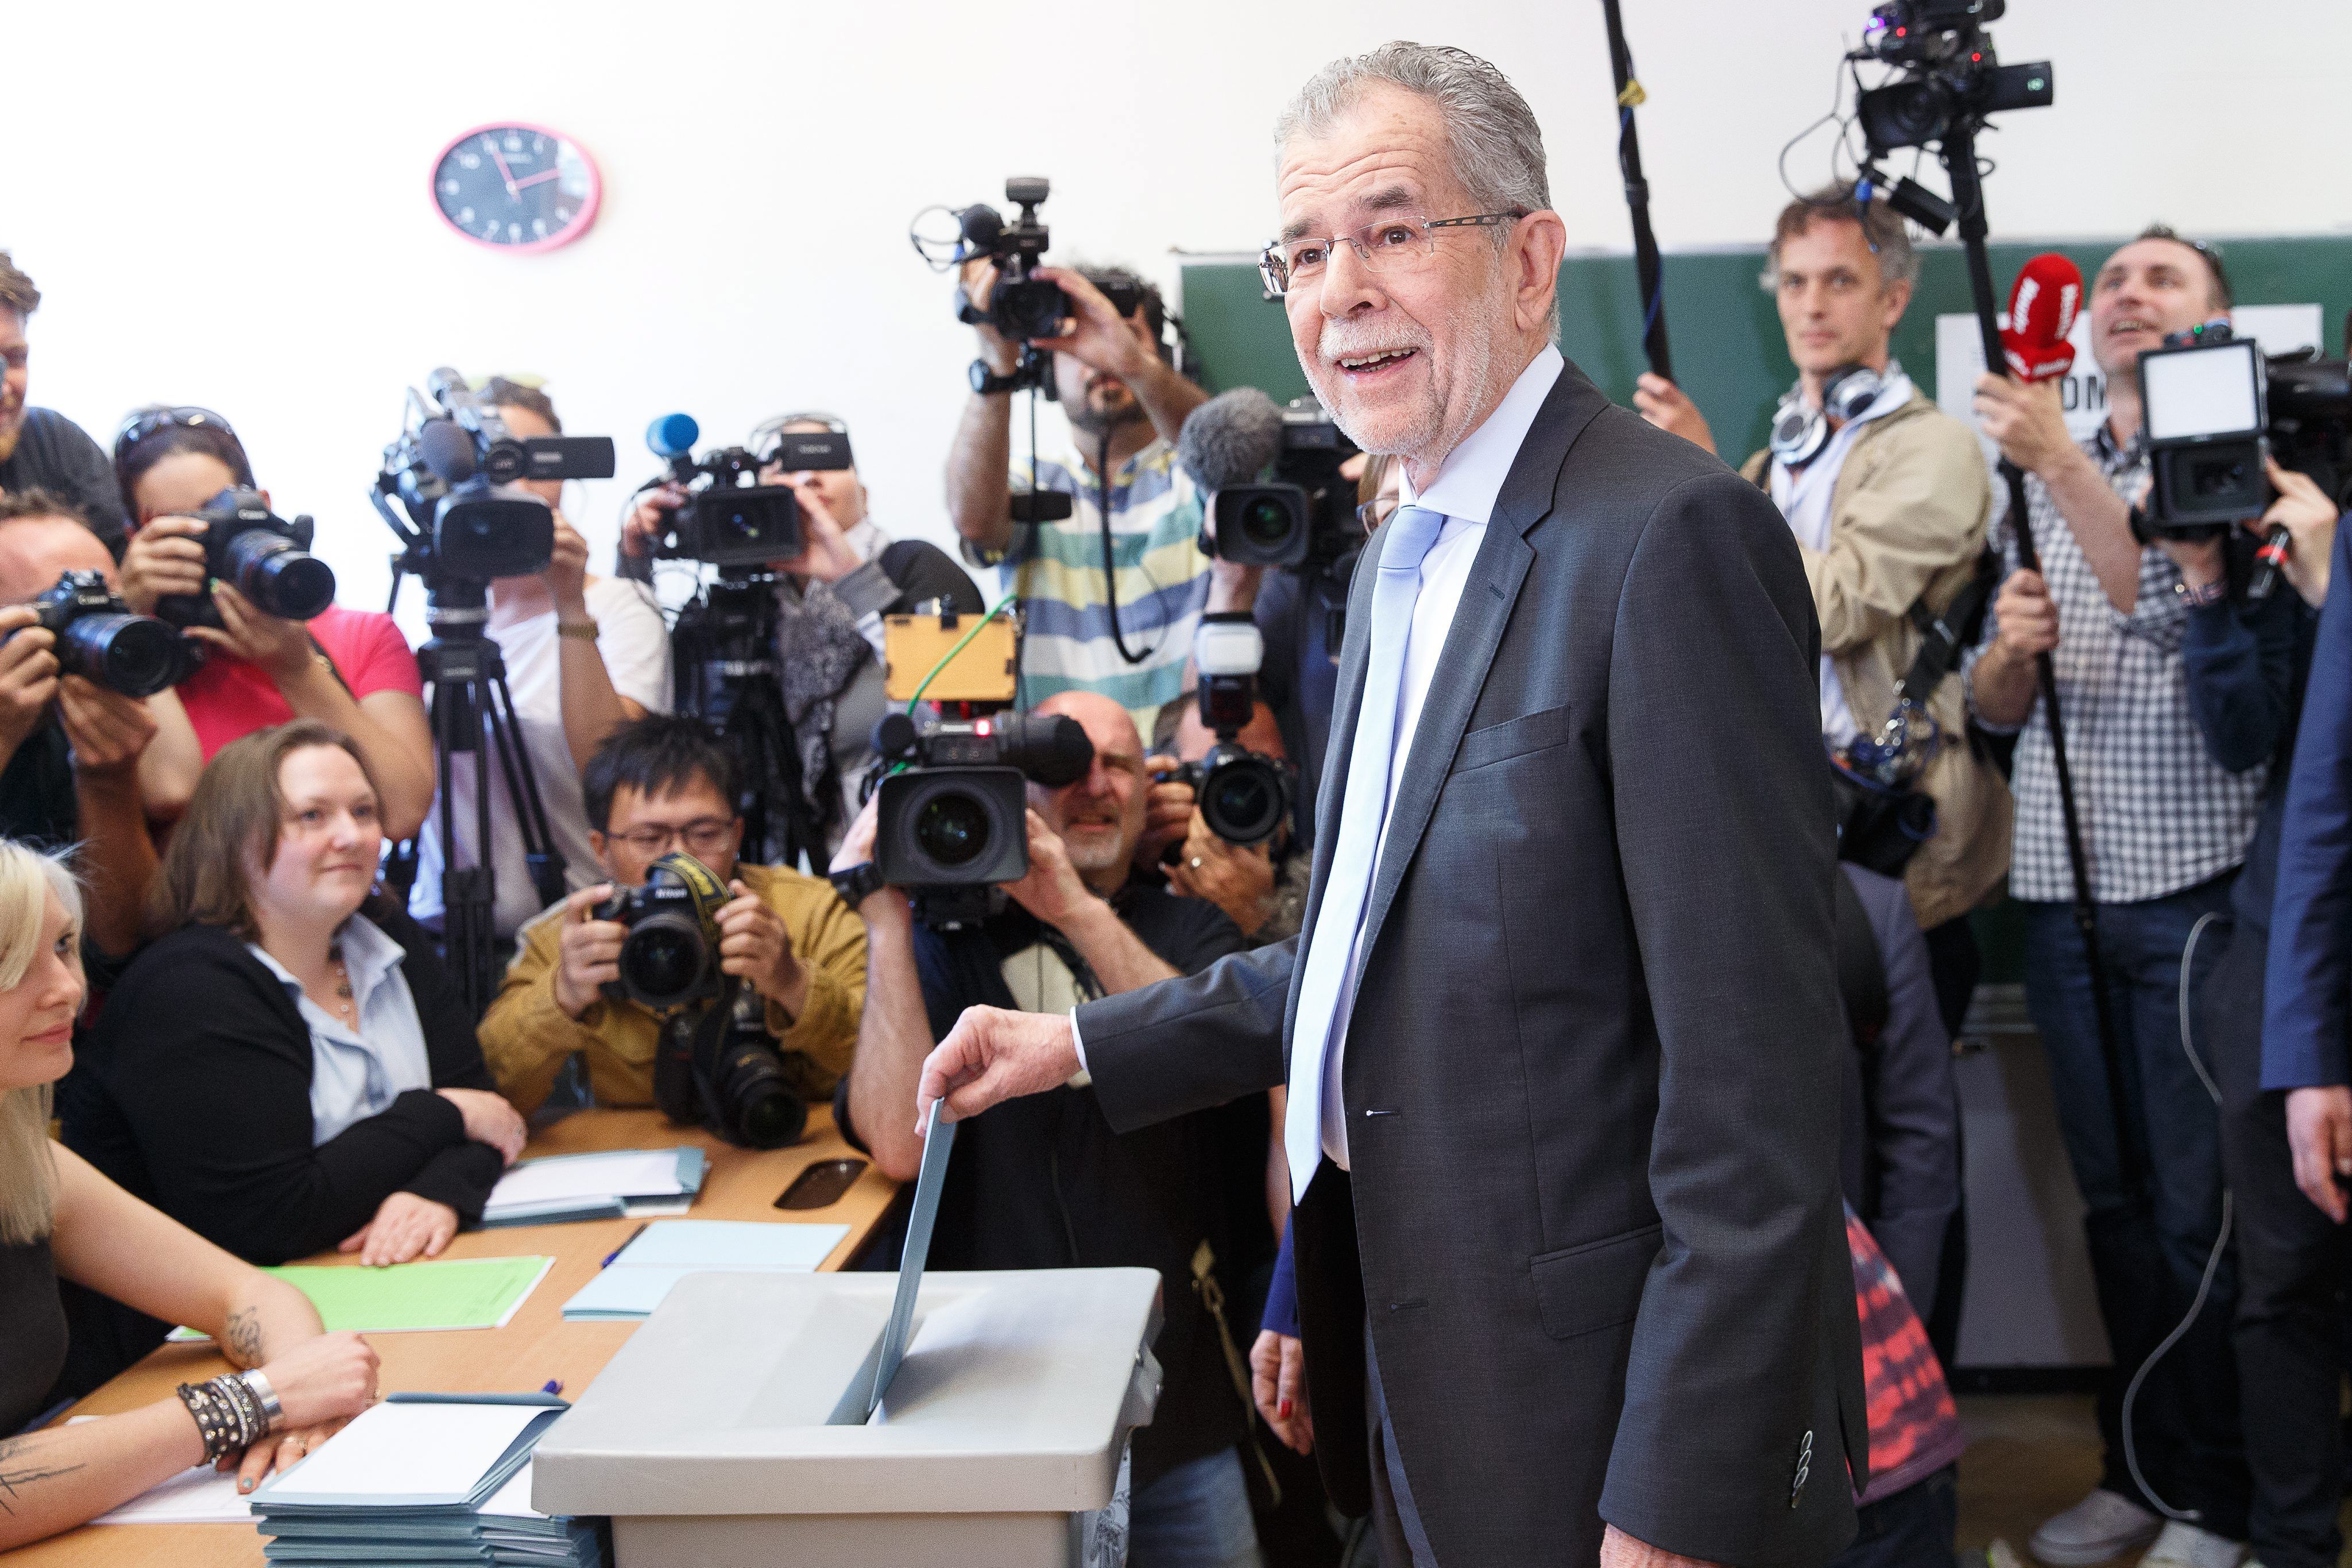 El candidato verde recorta distancias en las presidenciales de Austria